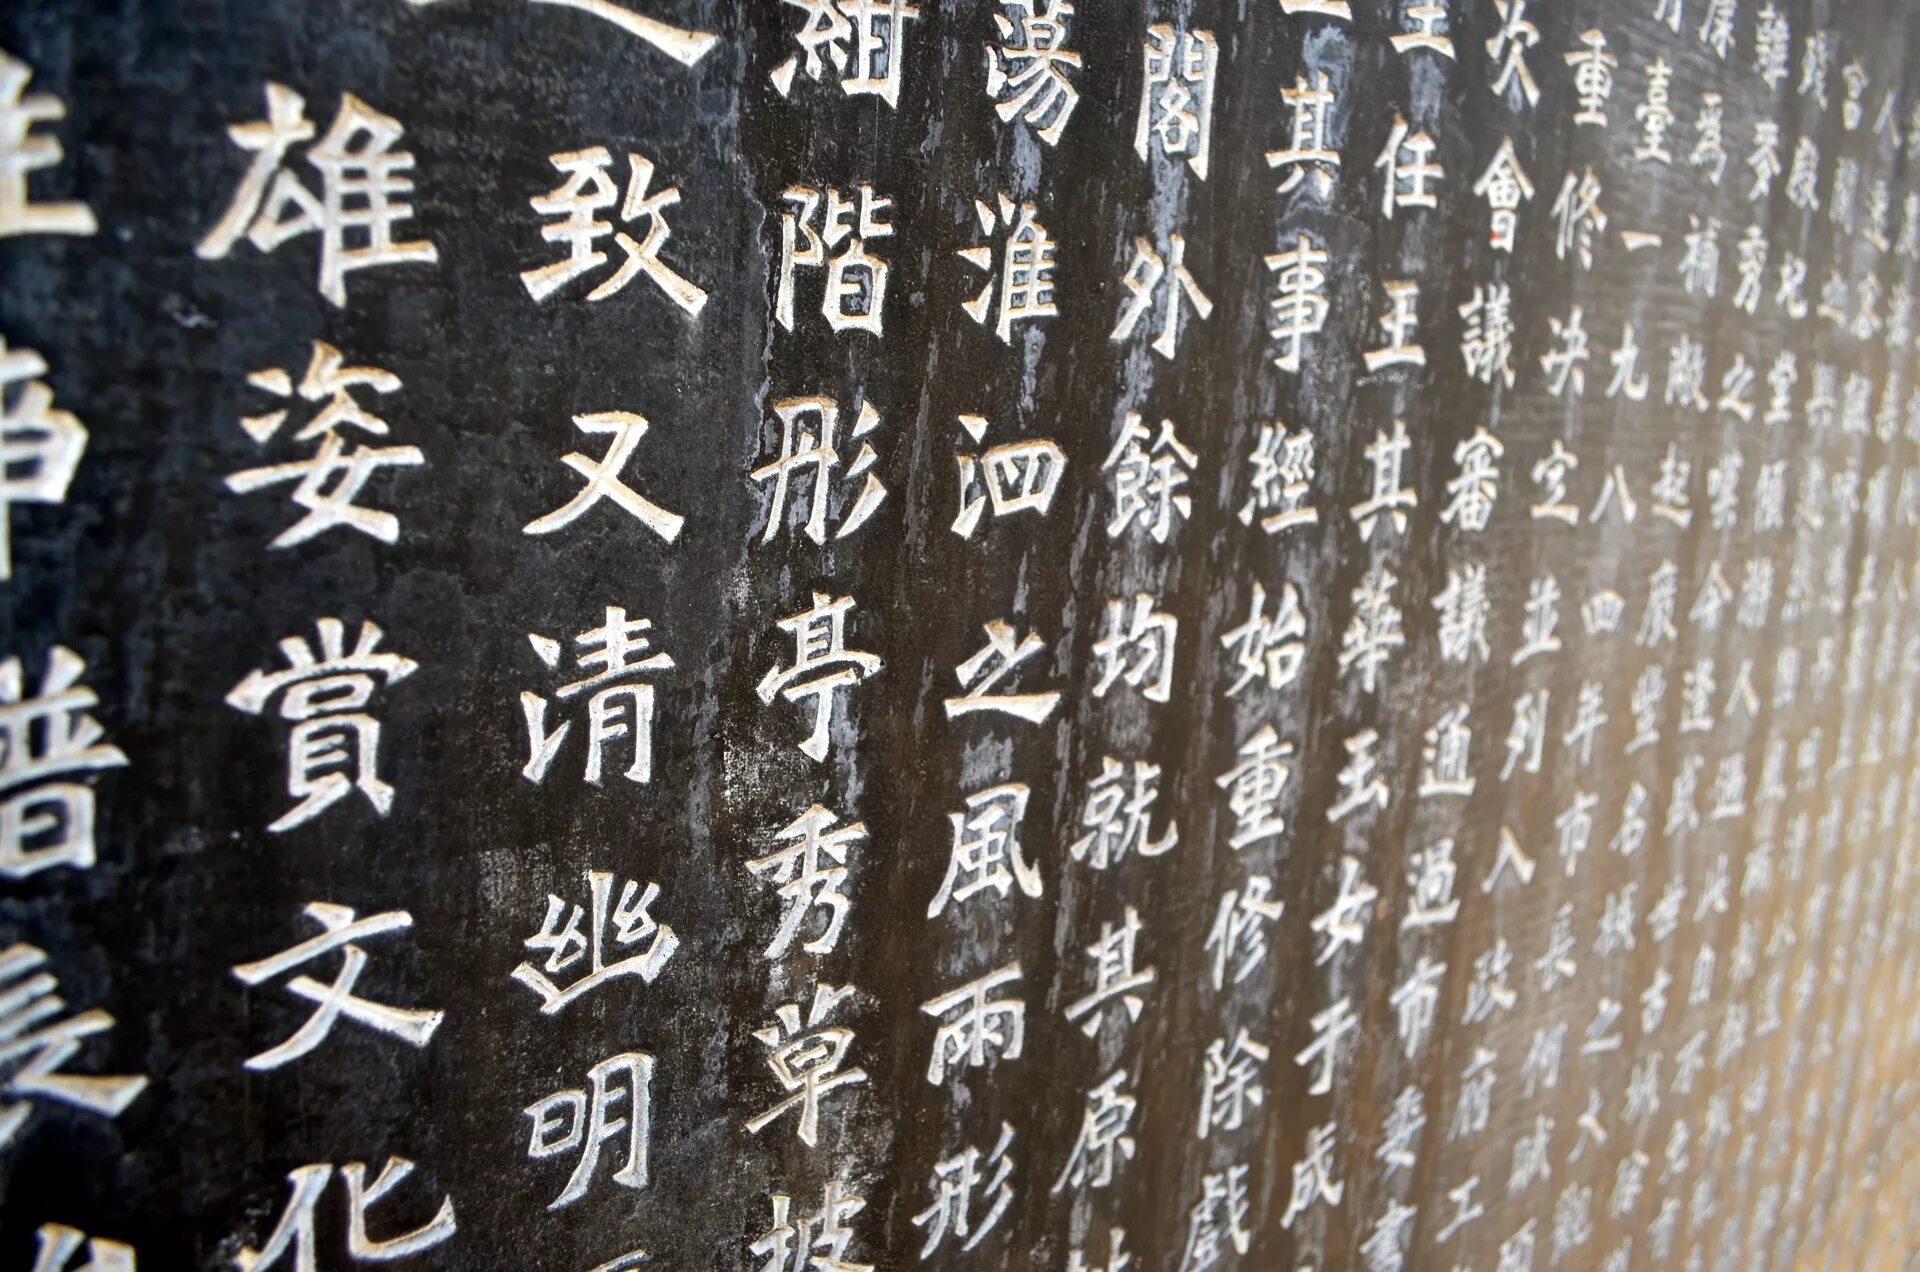 Новые иероглифы. Китайский алфавит путунхуа. Китайская письменность иероглифы. Путунхуа иероглифы. Иероглифическая письменность Японии.